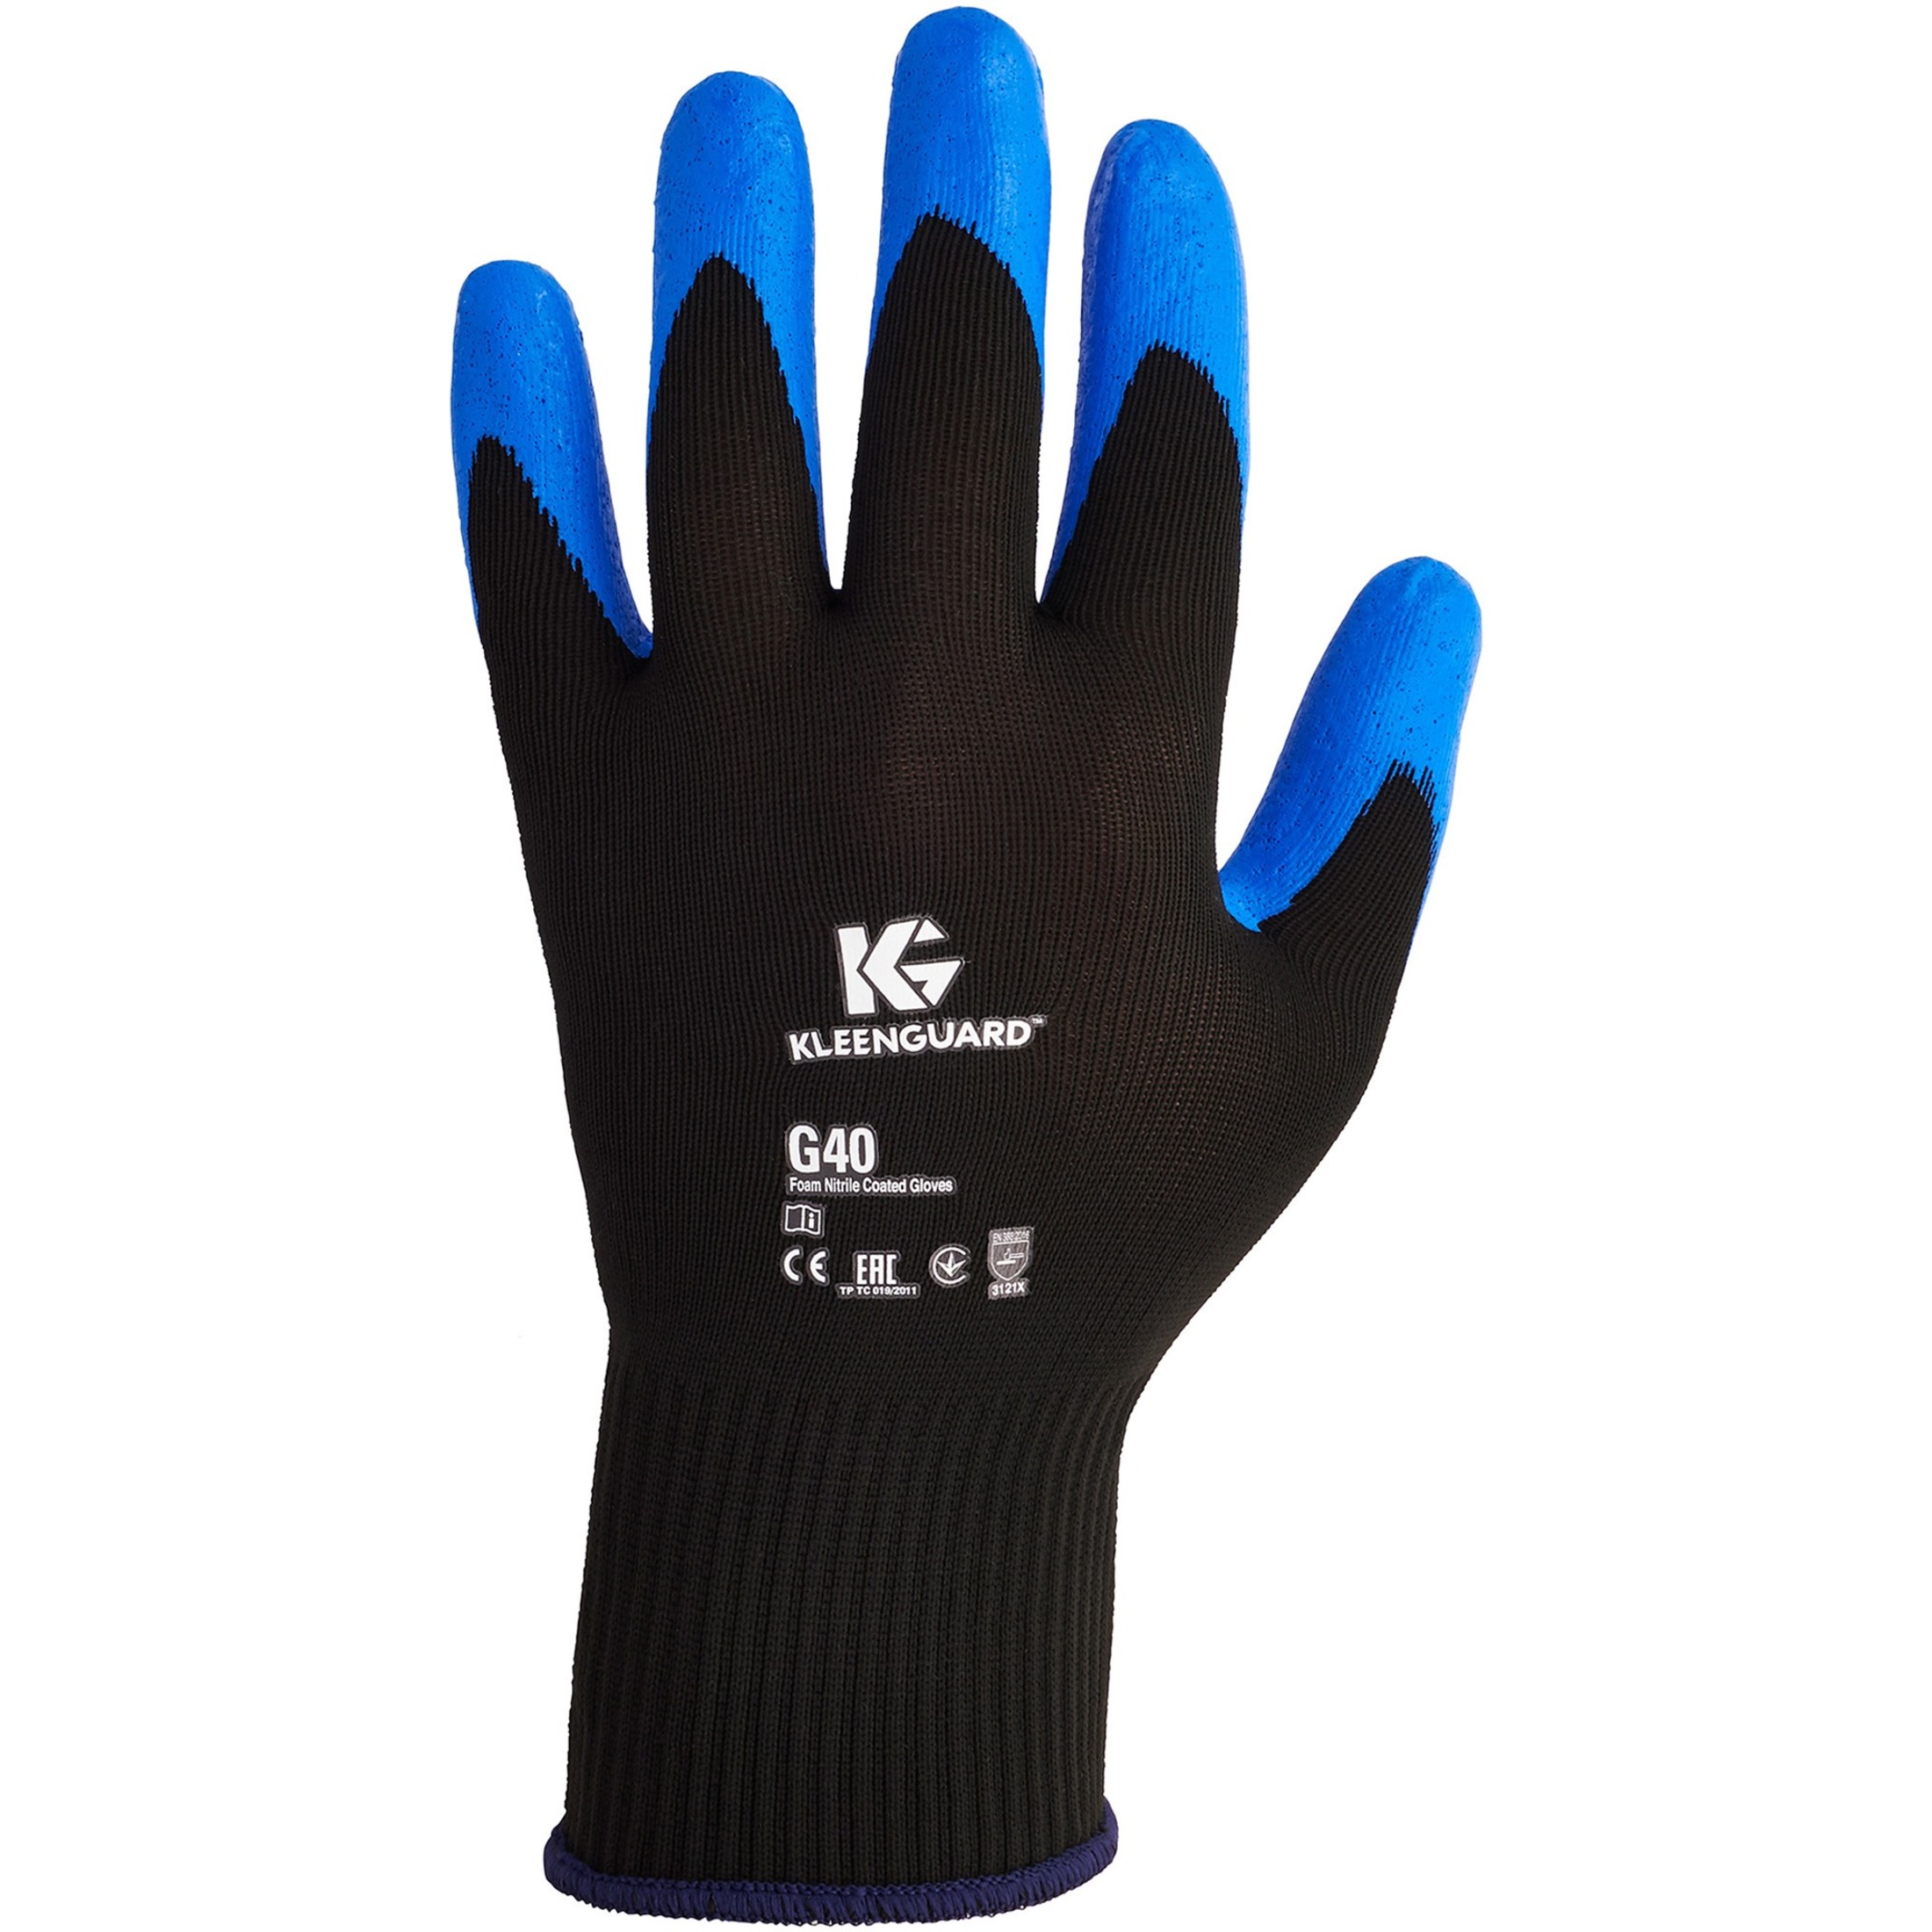 KleenGuard G40 Nitrile Coated Gloves, 230 mm Length, Medium/Size 8, Blue, 12 Pairs -KCC40226 - image 1 of 6